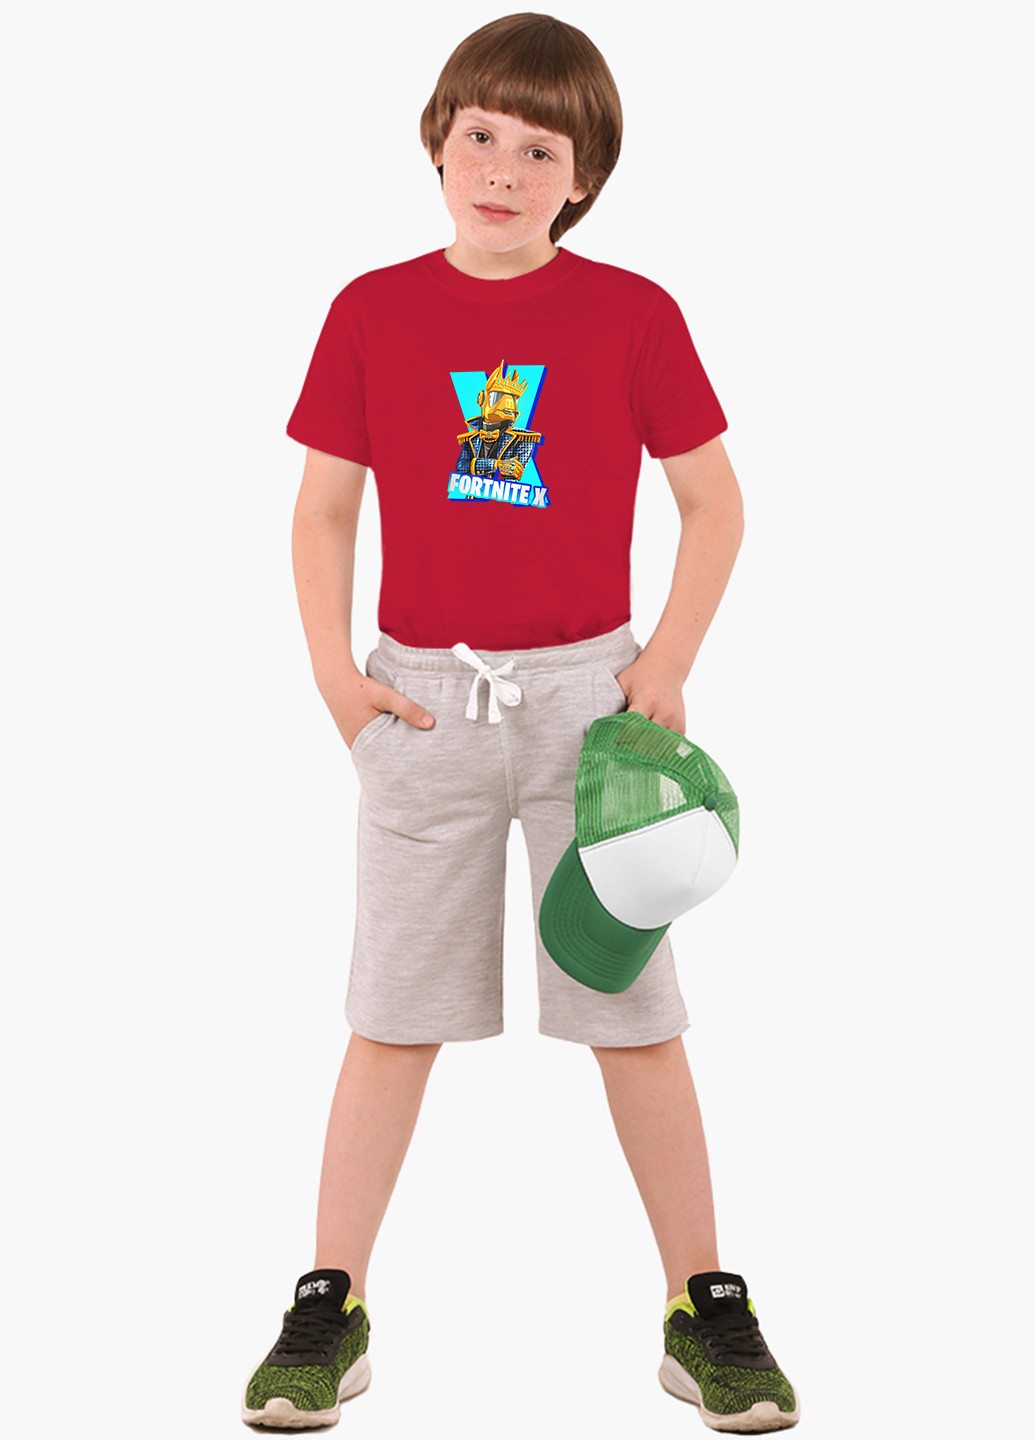 Червона демісезонна футболка дитяча фортнайт (fortnite) (9224-1196) MobiPrint